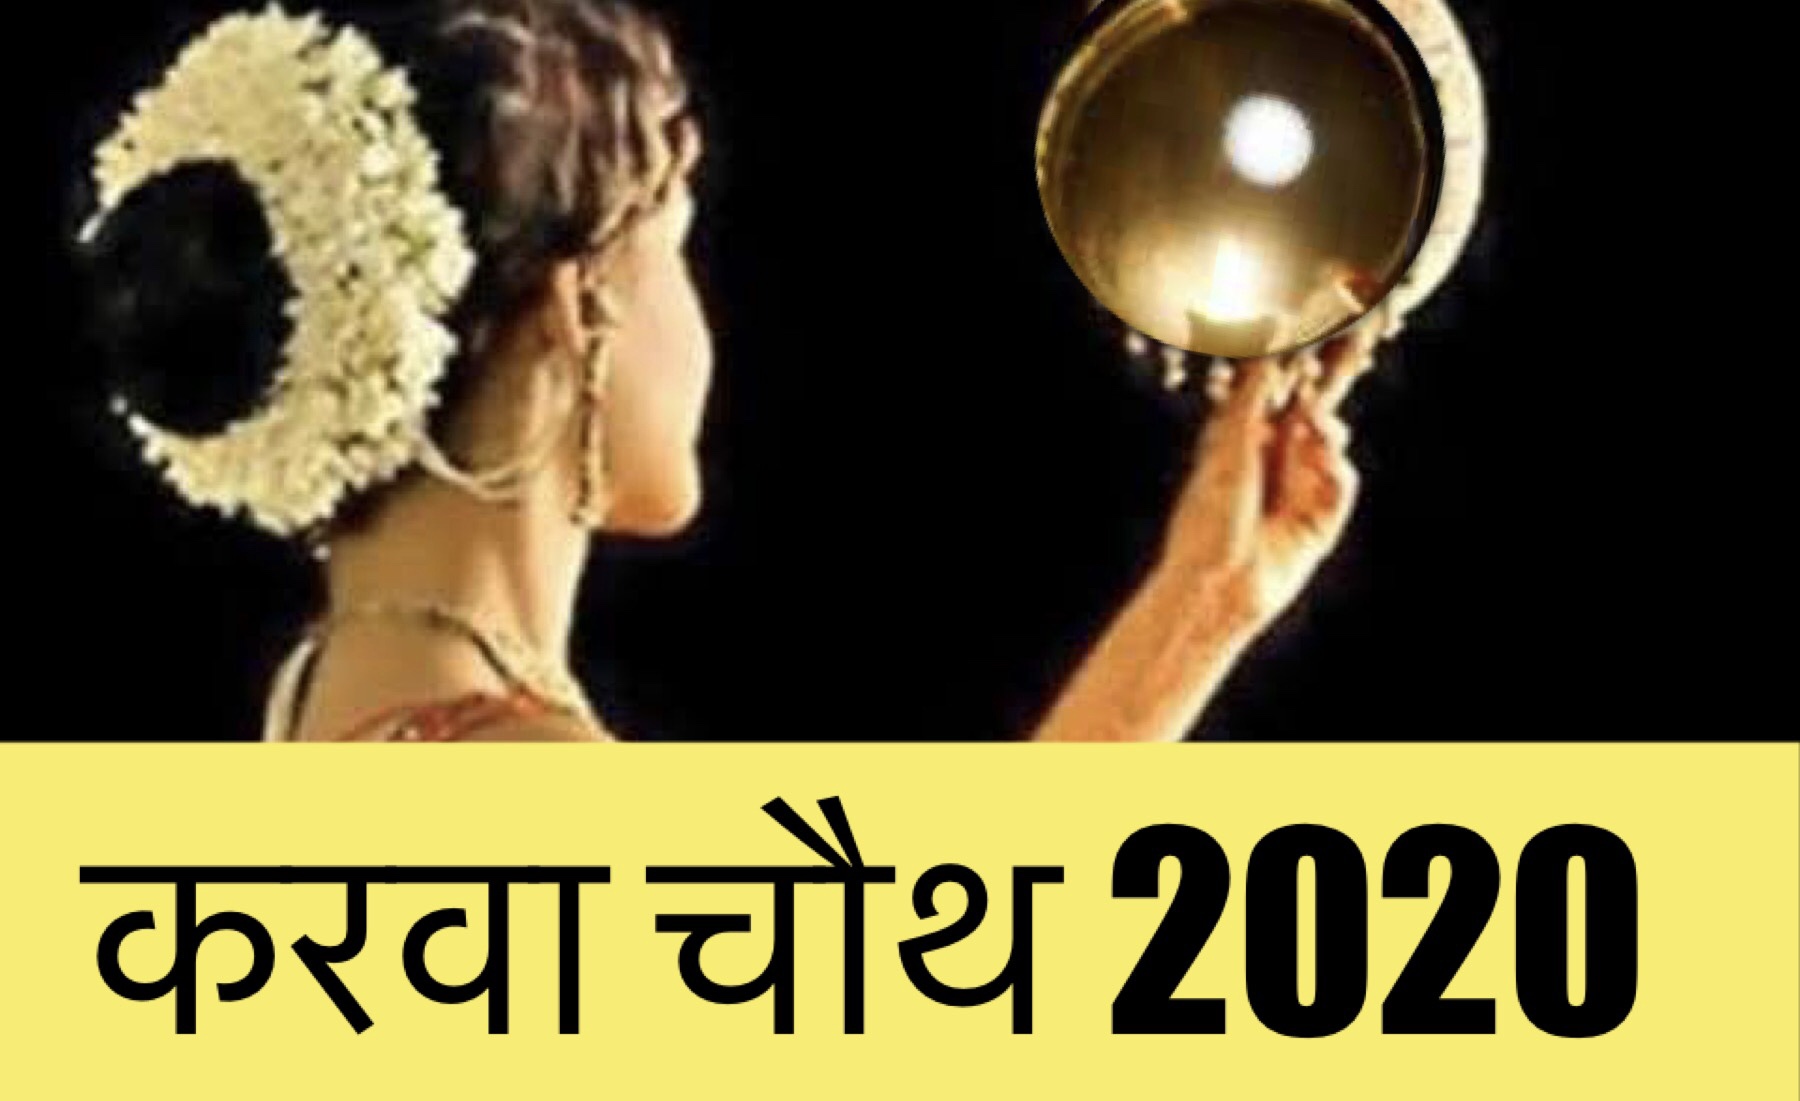 Karwachauth 2020: नवंबर के पहले सप्ताह में है करवाचौथ, जानिए शुभ मुहूर्त, तिथि और पूजा विधि